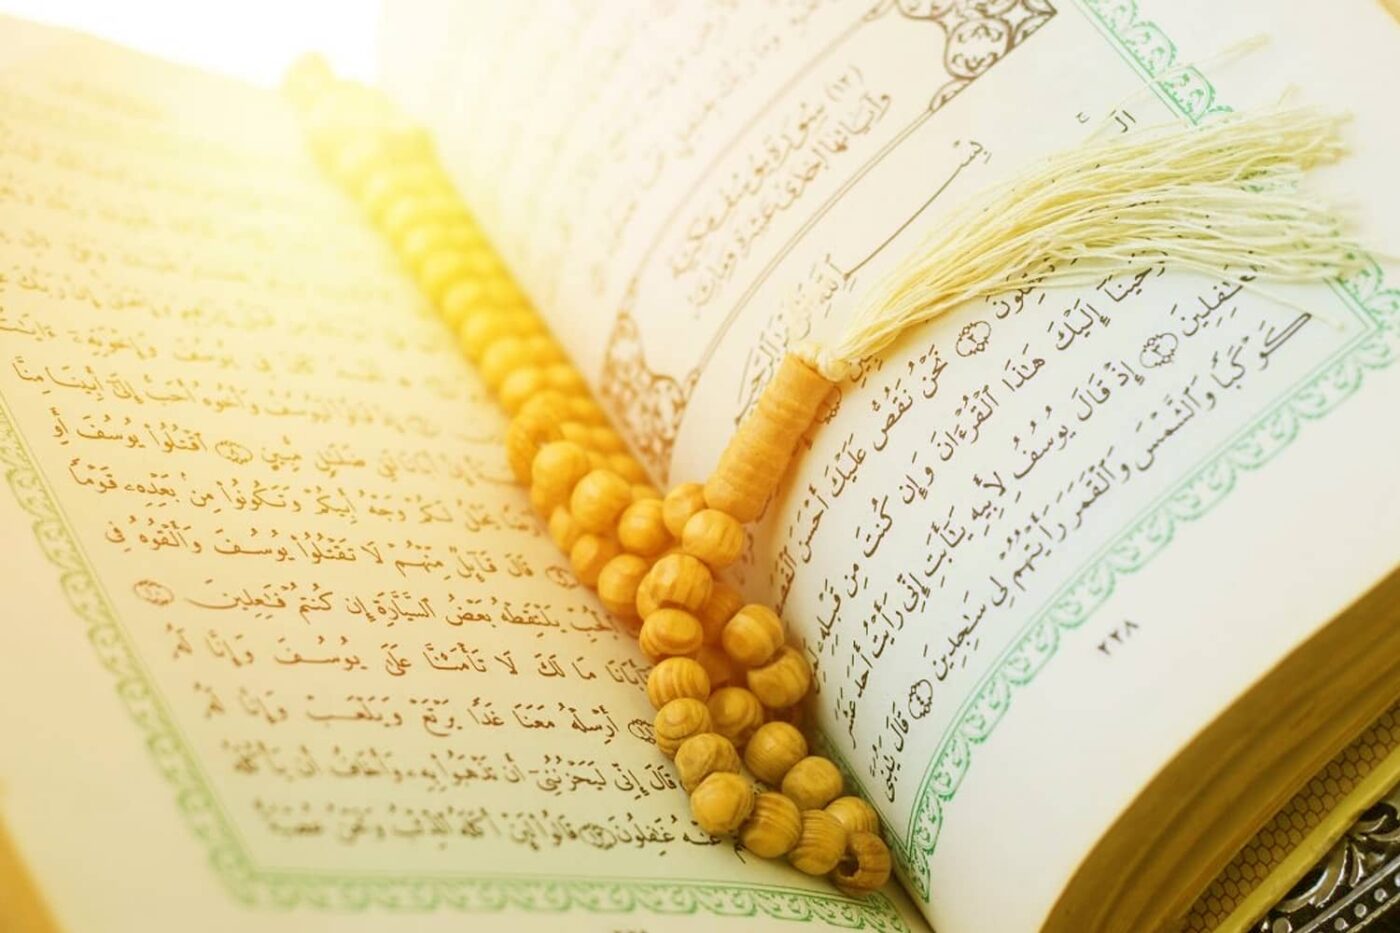 Female Quran Reciter Online